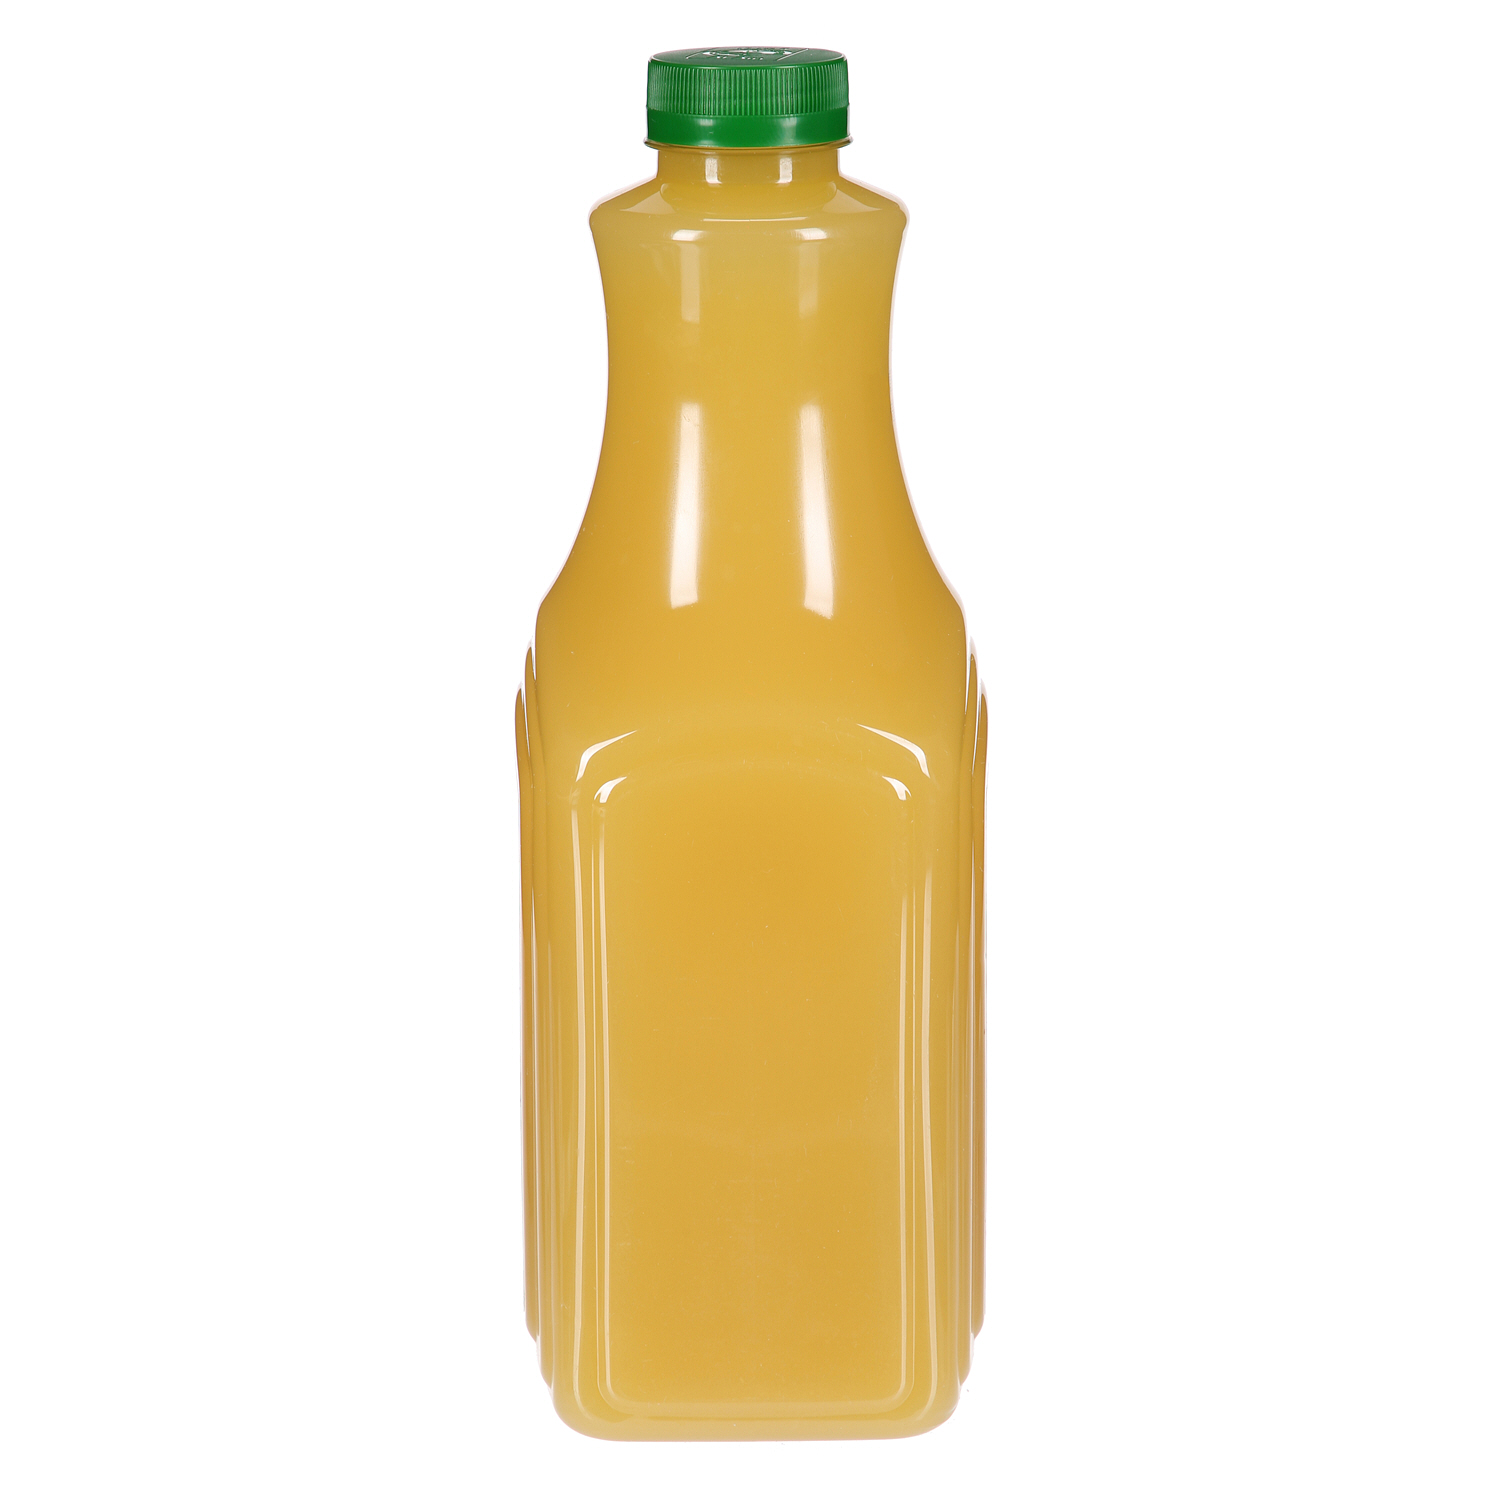 Al Ain Fresh Pineapple Juice 1.8Ltr